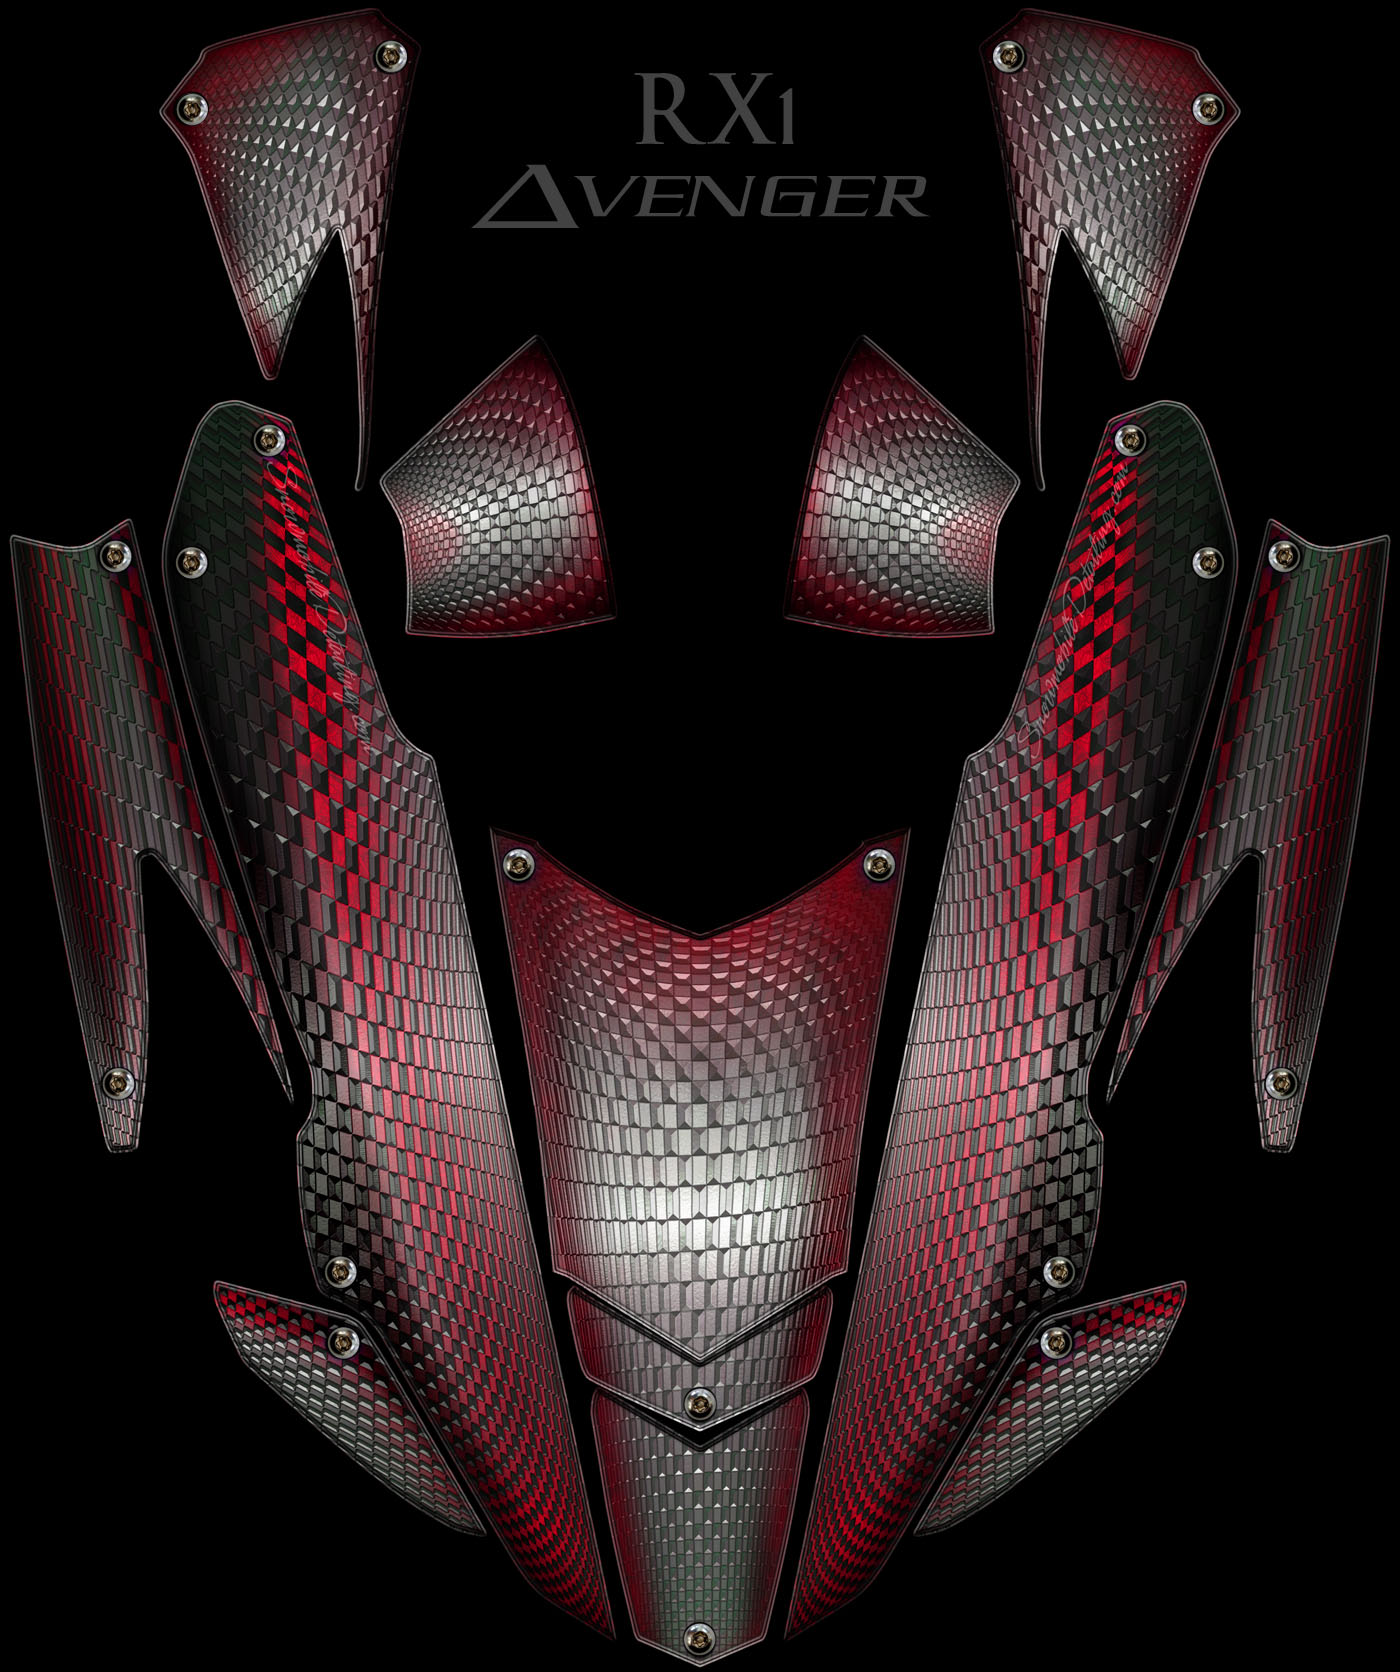 Avenger red RX! sled graphics